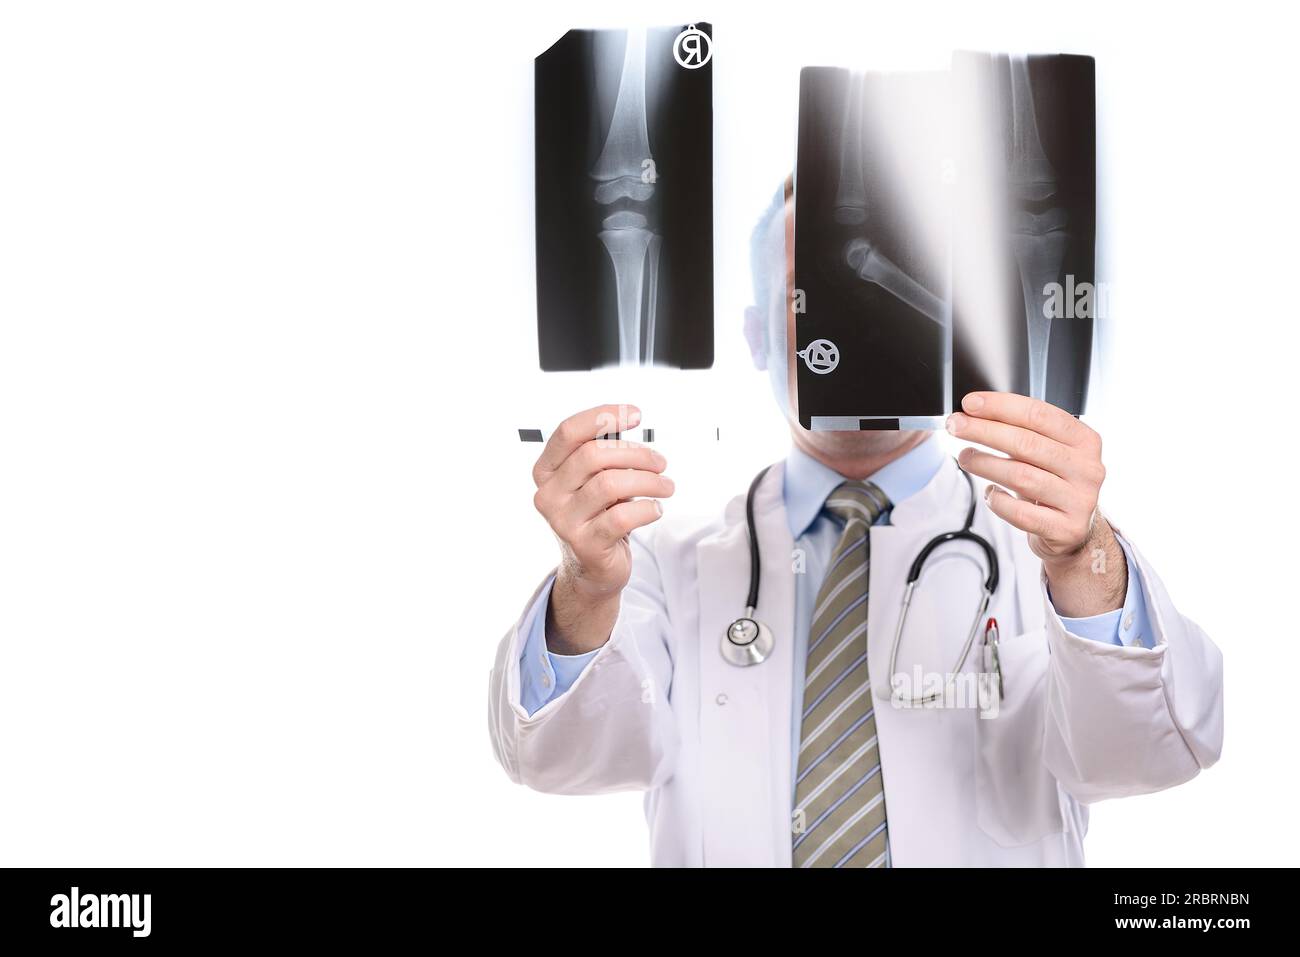 Männlicher Arzt, Radiologe oder orthopädischer Chirurg verglich zwei Röntgenstrahlen, die sie gegen das Licht halten, das sein Gesicht verdeckt, isoliert auf weiß Stockfoto